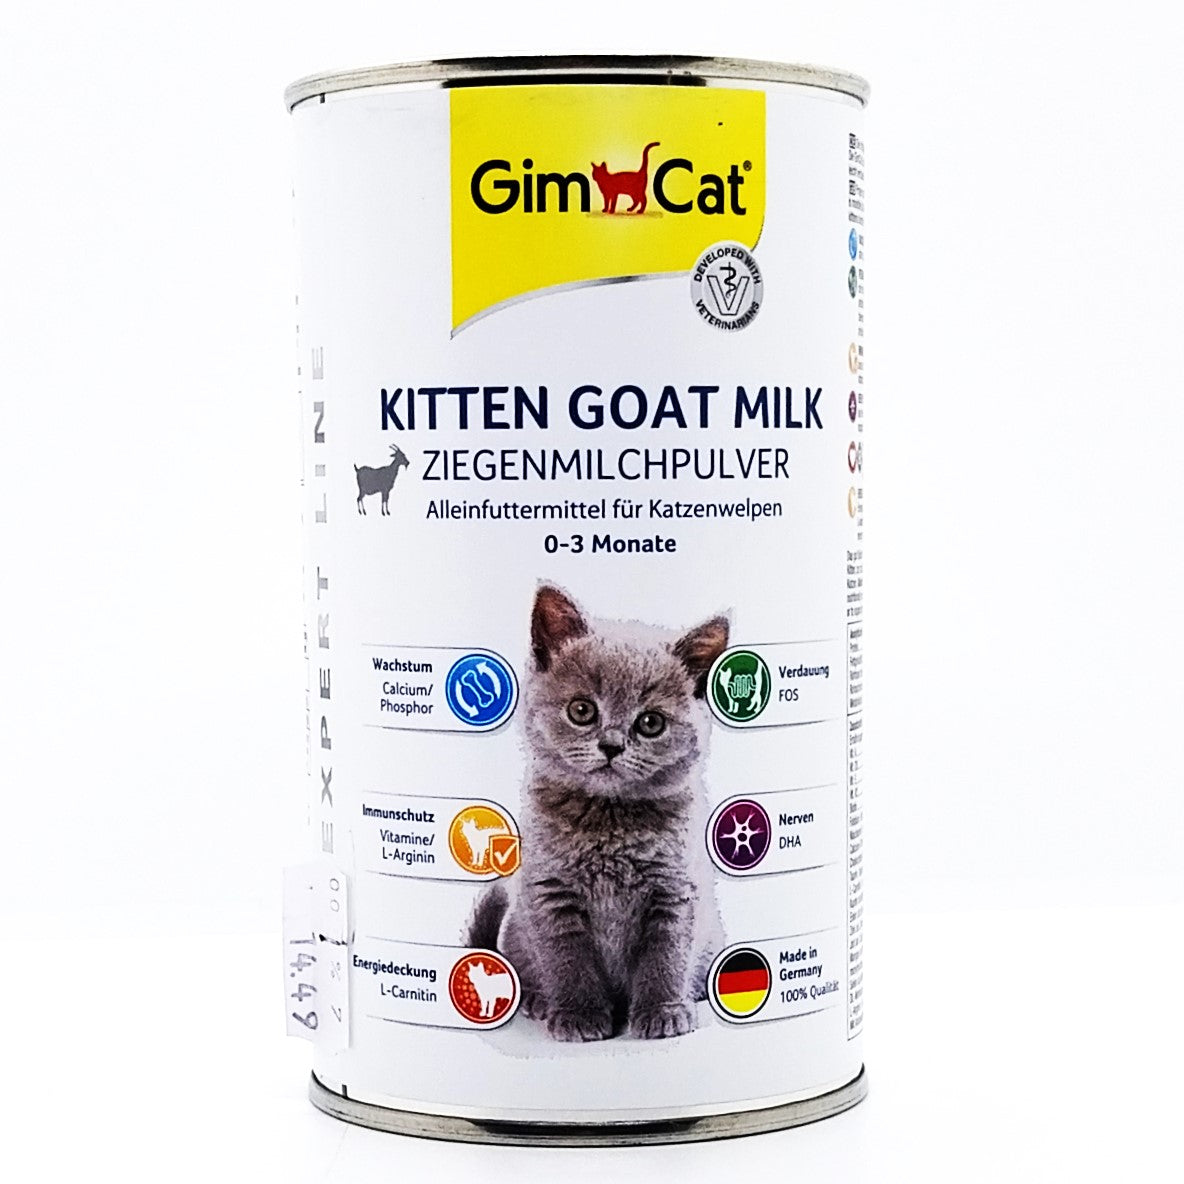 GimCat Expert Line Kitten Goat Milk 200g